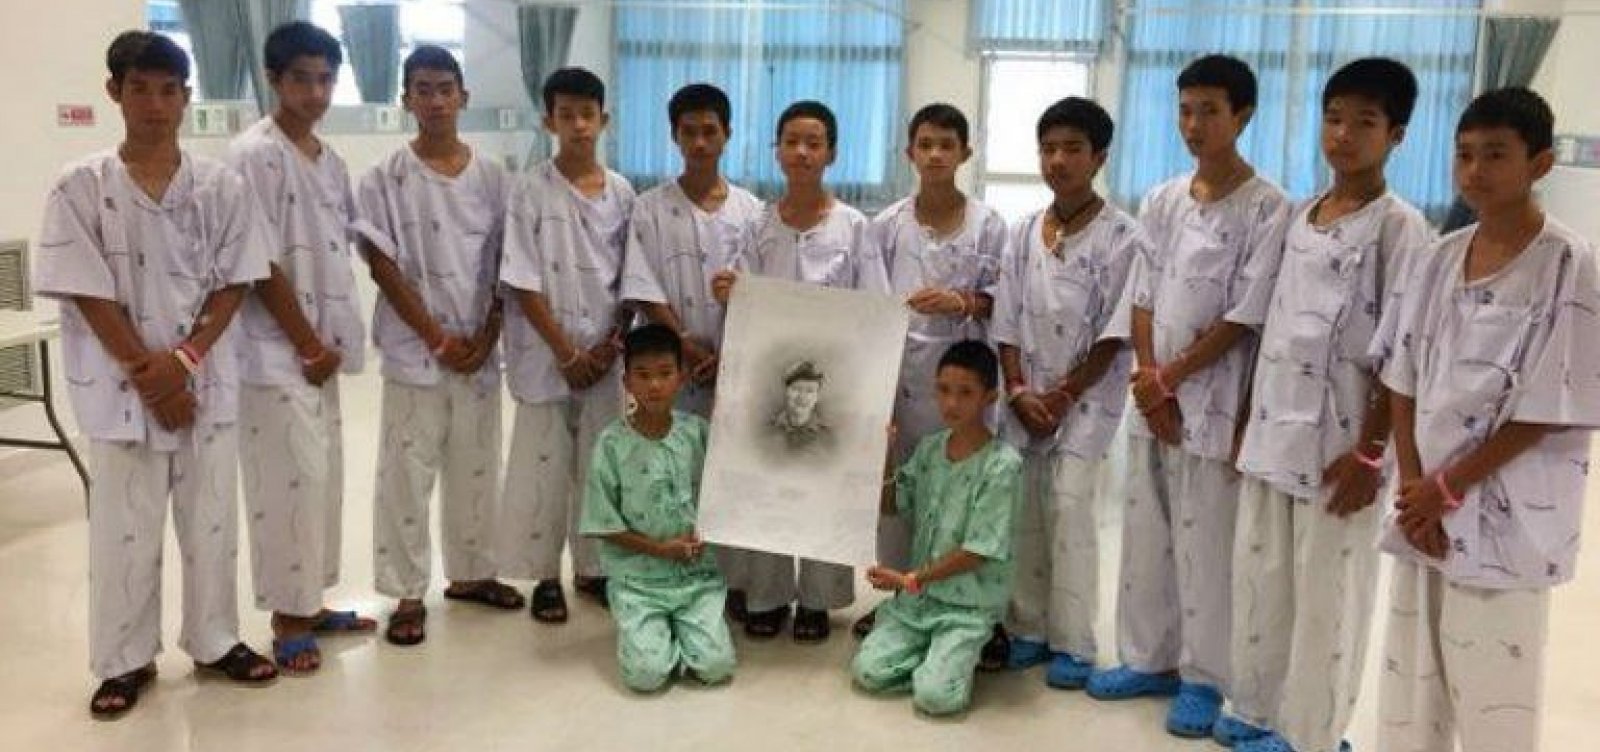 Meninos resgatados de caverna na Tailândia homenageiam mergulhador morto